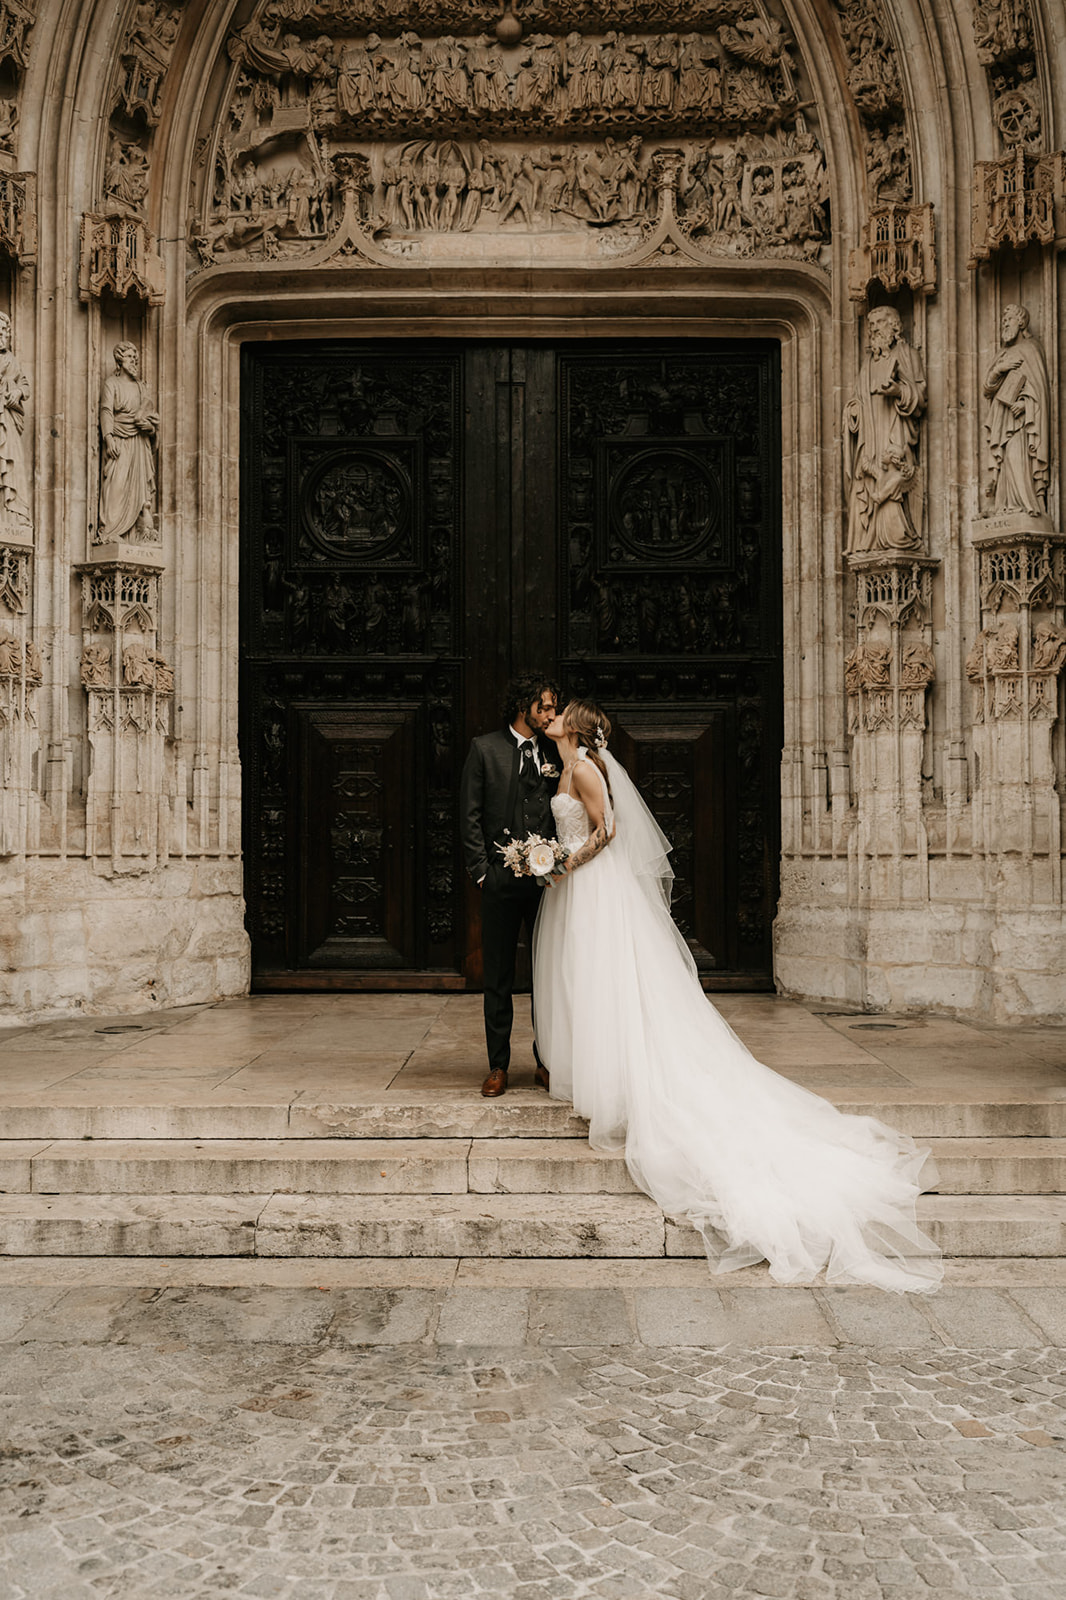 Johanna & Terry : Un mariage élégant et moderne à Rouen